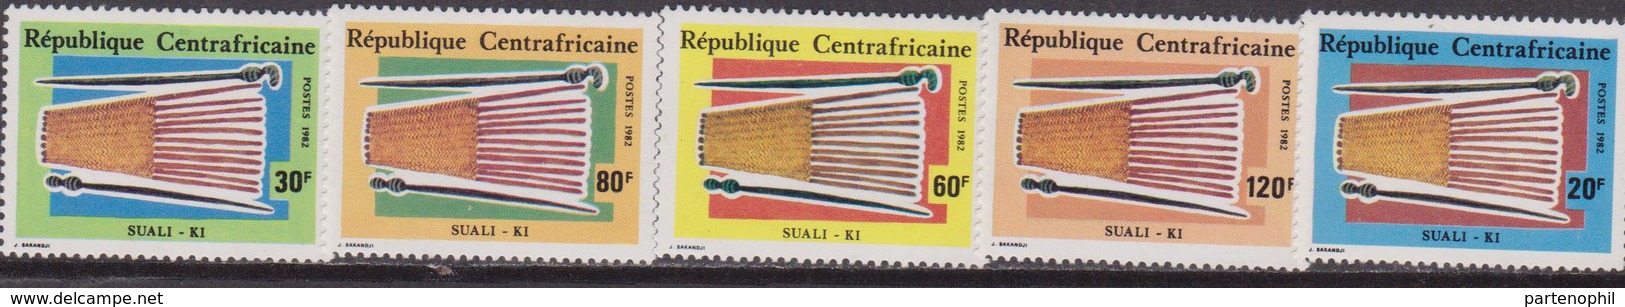 Rep. Centrafricaine - Arts Set MNH - República Centroafricana